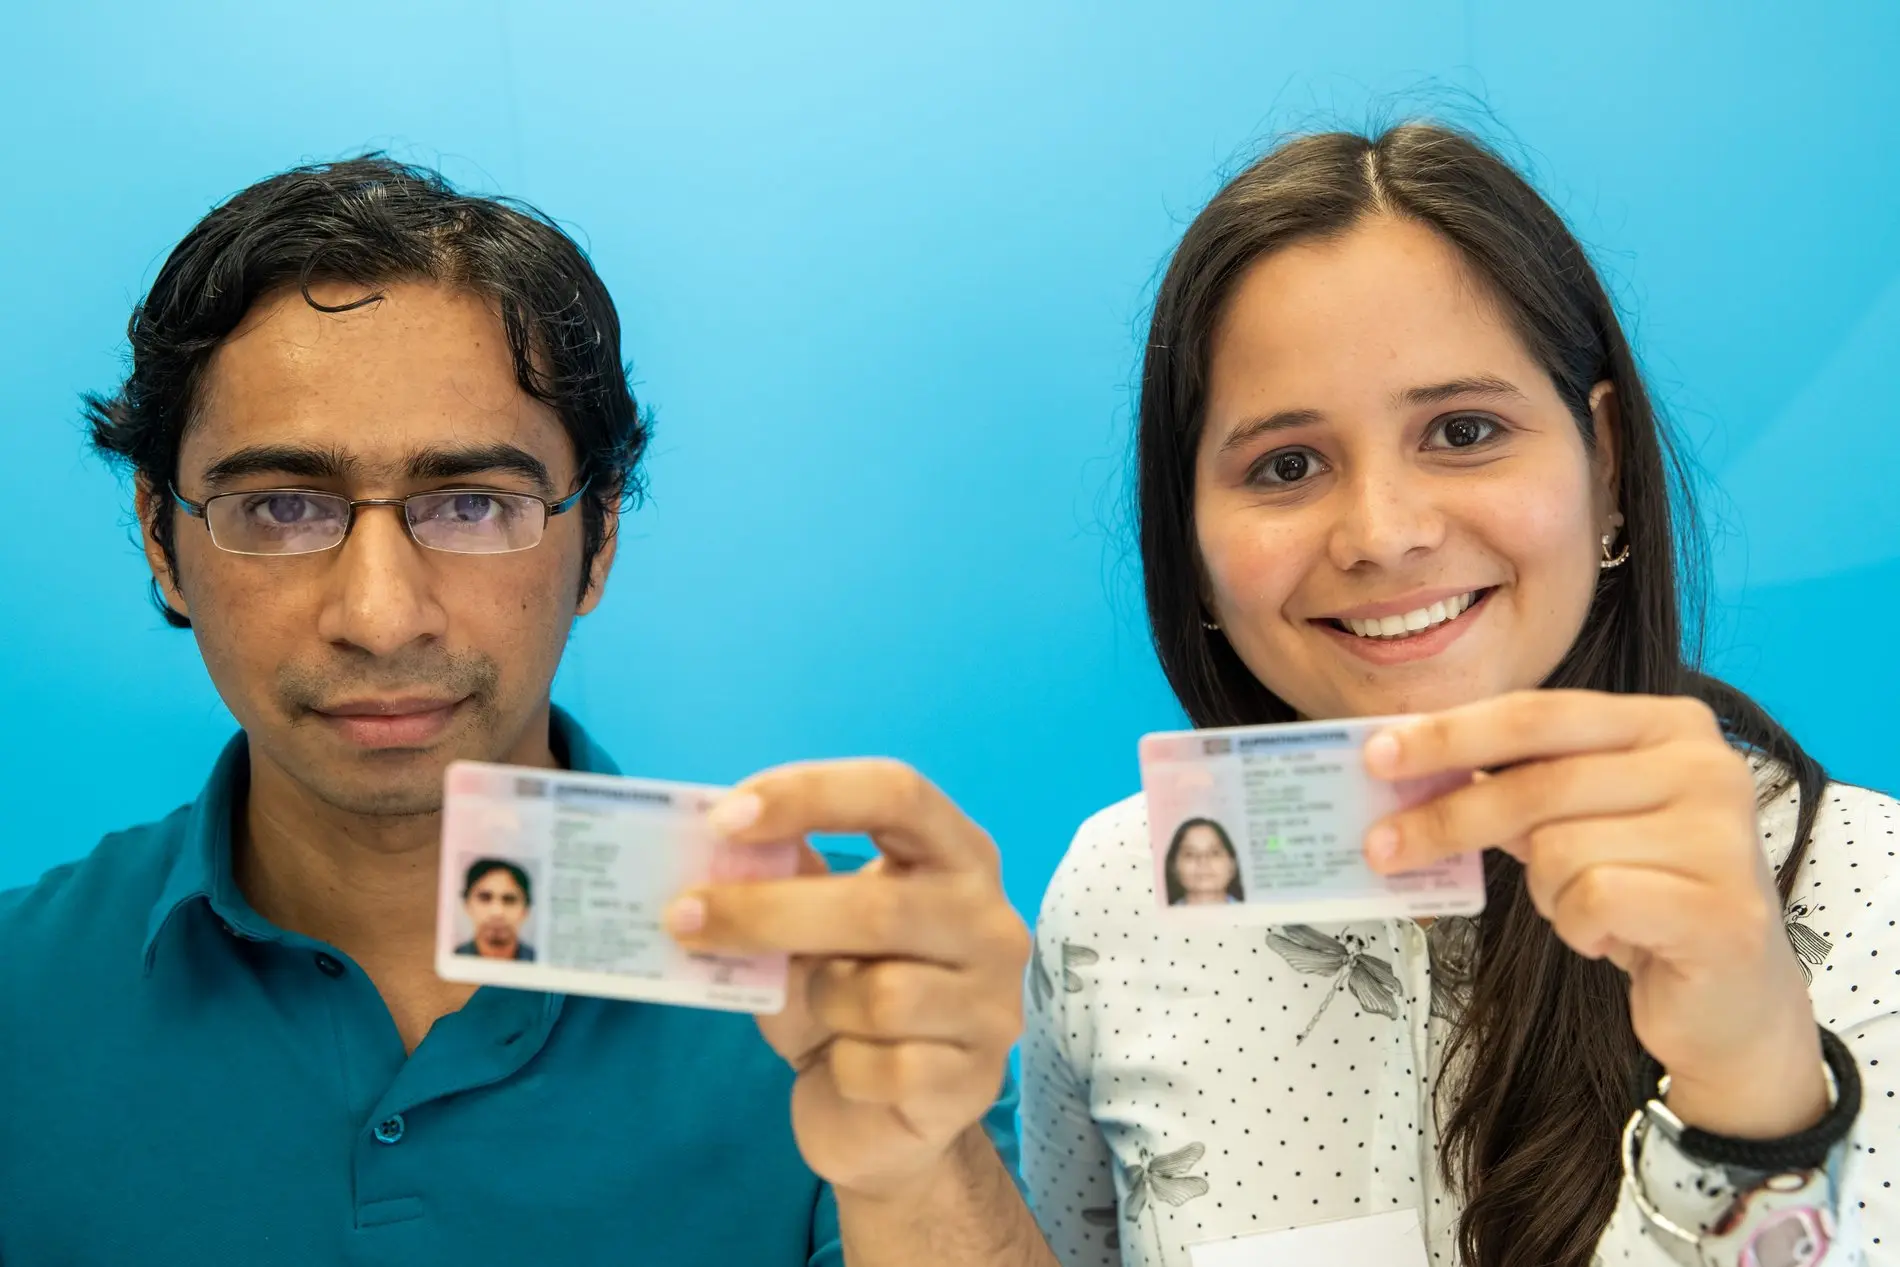 Elektroingenieurin aus Venezuela und Softwareentwickler aus Indien halten ihre "Blaue Karte" in den Händen.